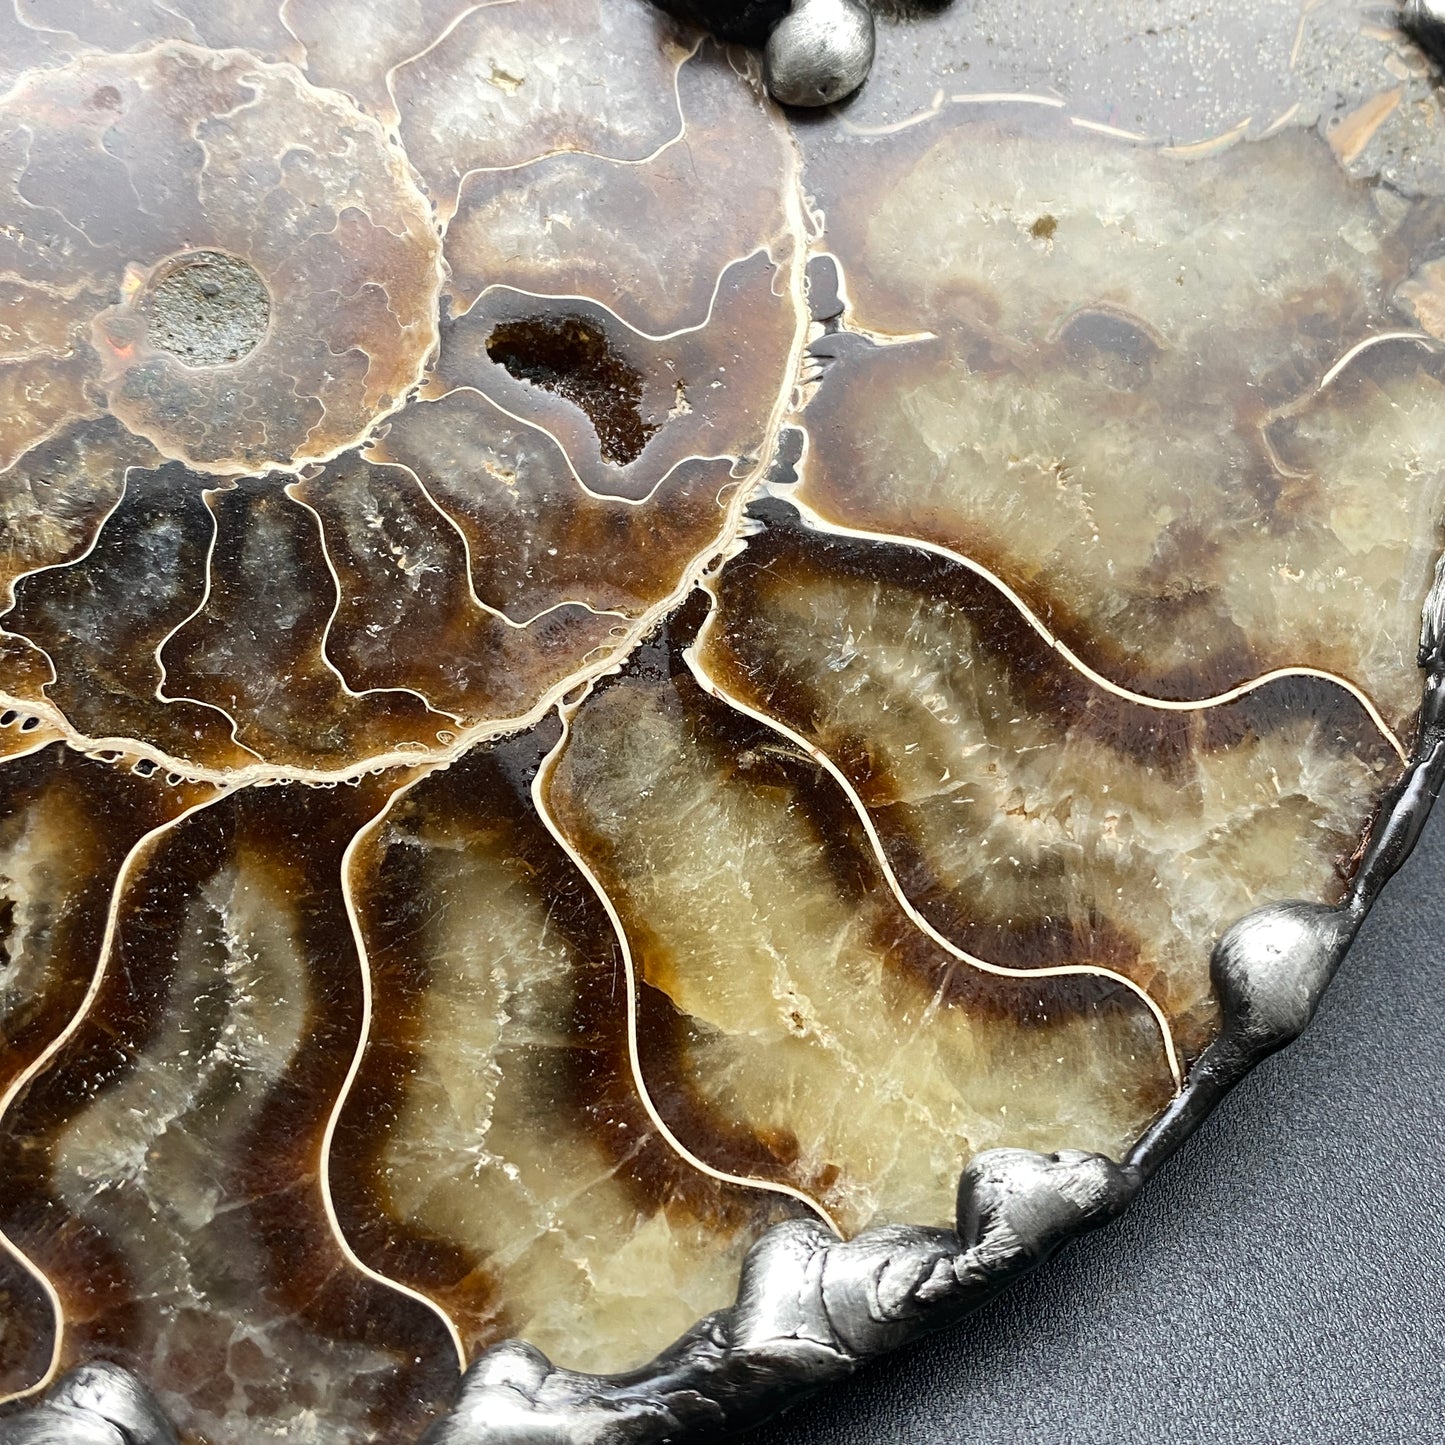 Fibonacci ~ XL Fossil Ammonite Necklace